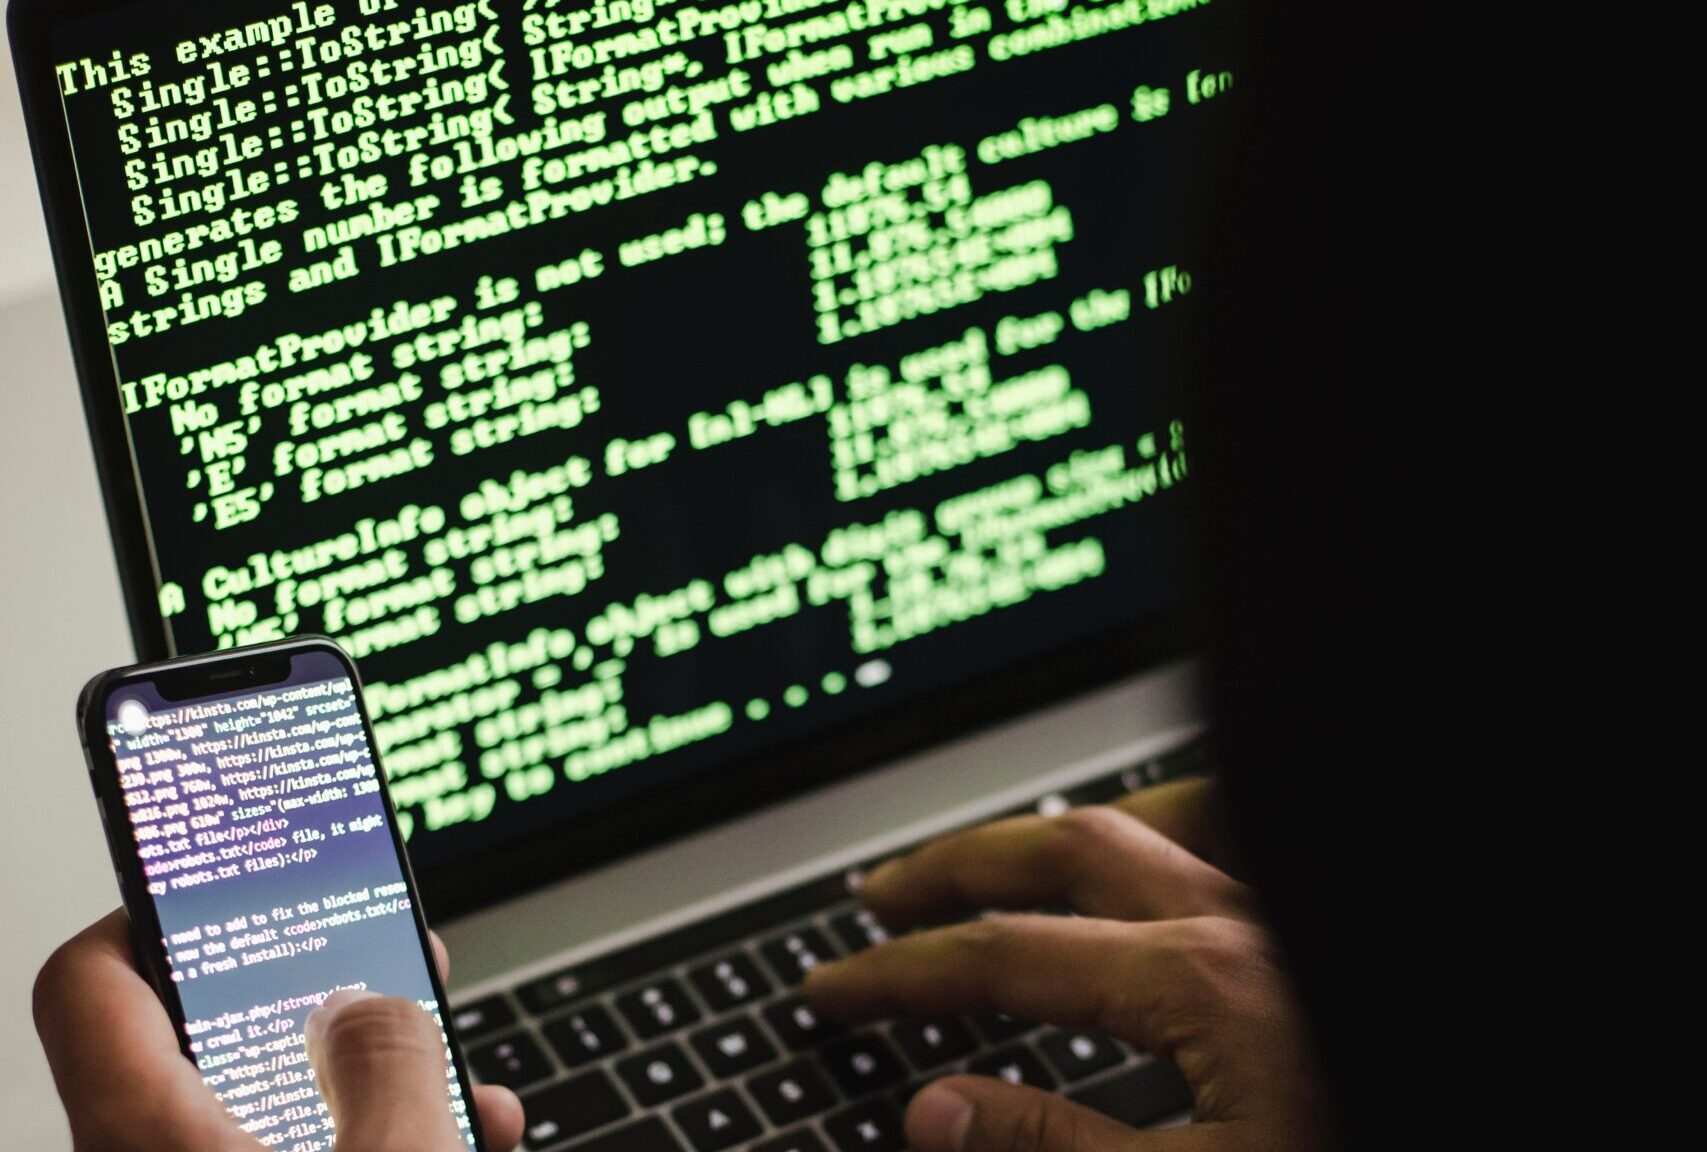 Akad lanca seguro contra riscos ciberneticos para pequenas e medias